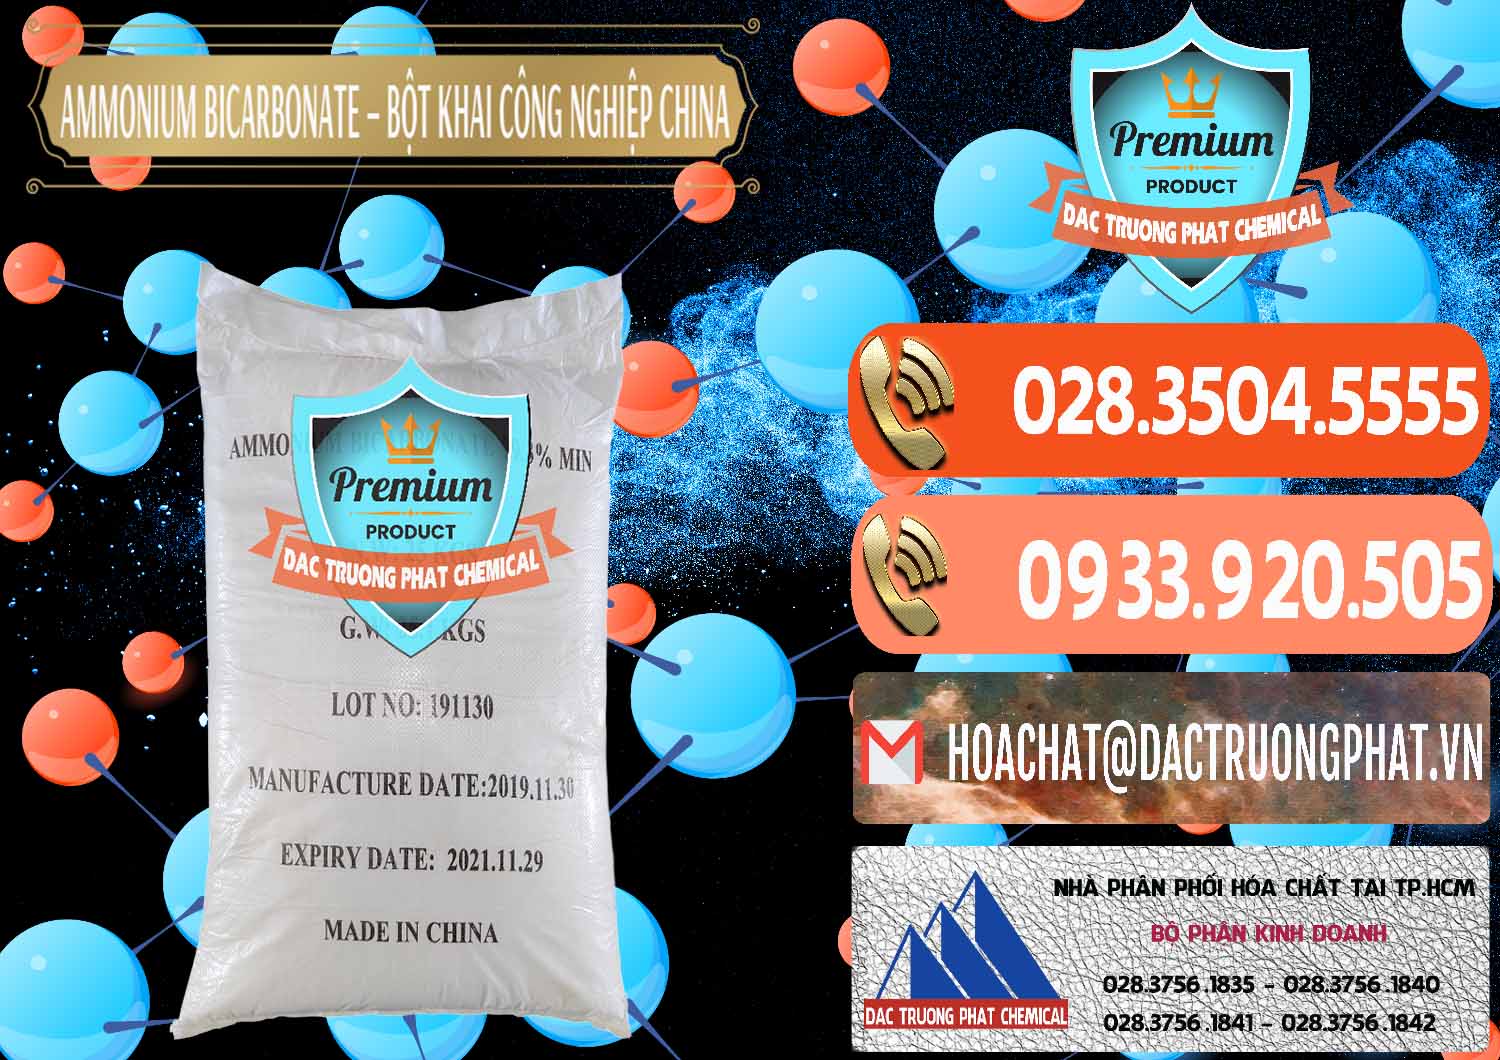 Chuyên bán ( cung ứng ) Ammonium Bicarbonate – Bột Khai Công Nghiệp Trung Quốc China - 0020 - Cty chuyên cung cấp ( bán ) hóa chất tại TP.HCM - hoachatmientay.com